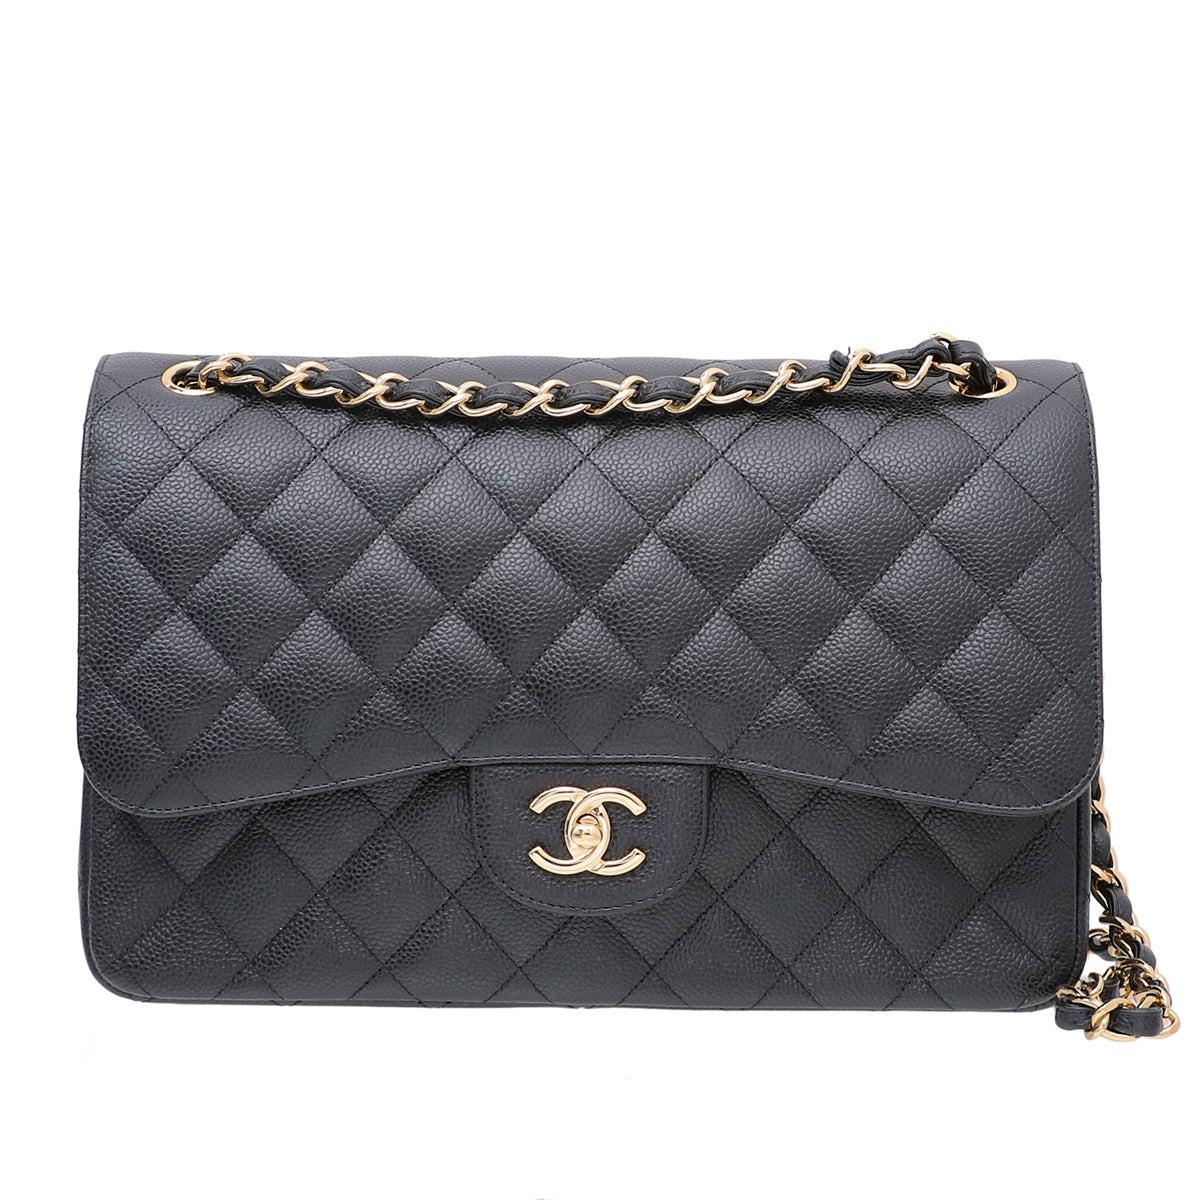 Chanel Black Classic Jumbo Double Flap Bag